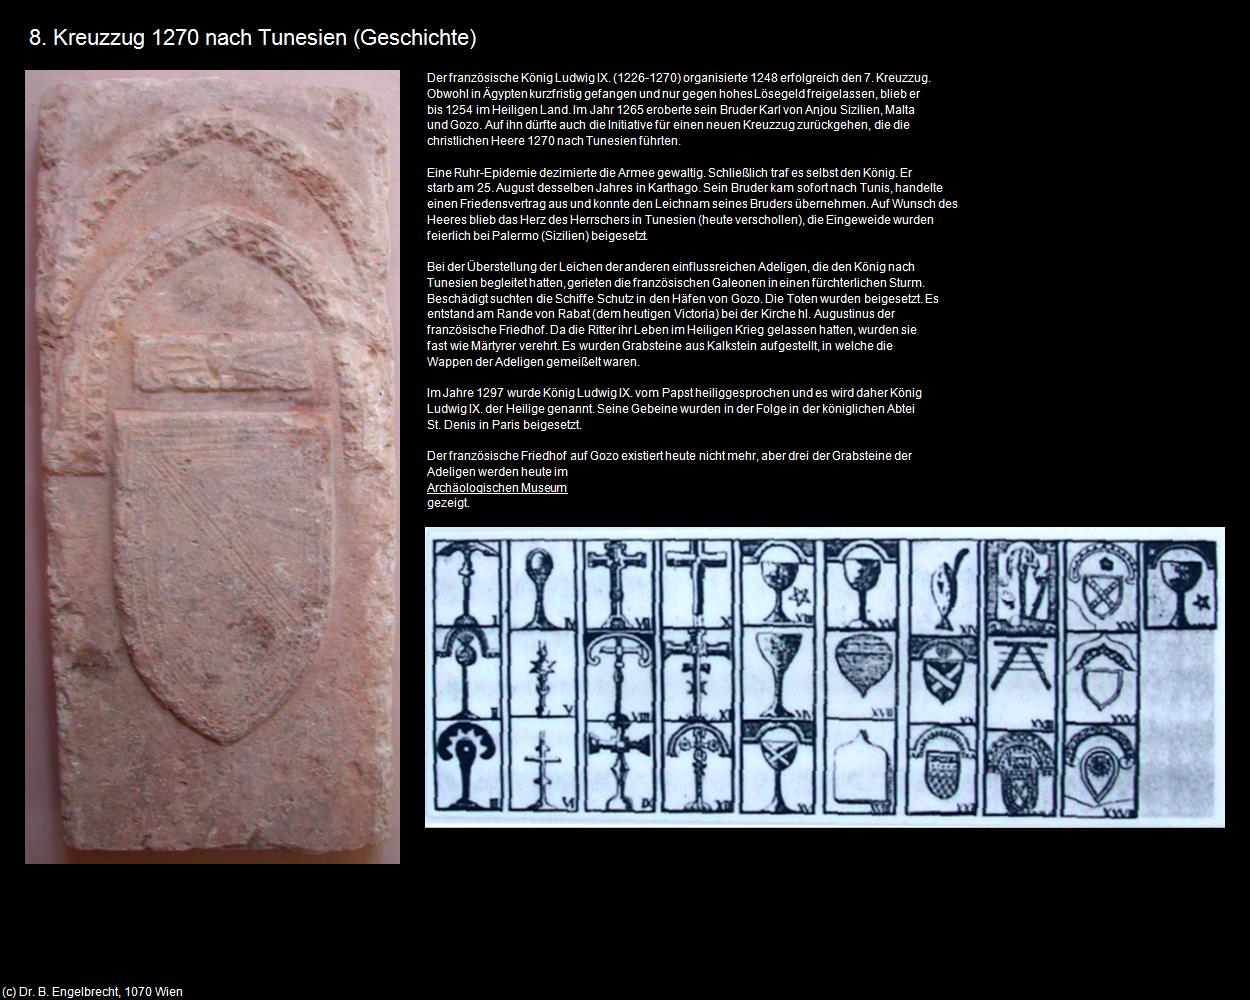 8. Kreuzzug 1270 nach Tunesien (+Geschichte) in Malta - Perle im Mittelmeer(c)B.Engelbrecht